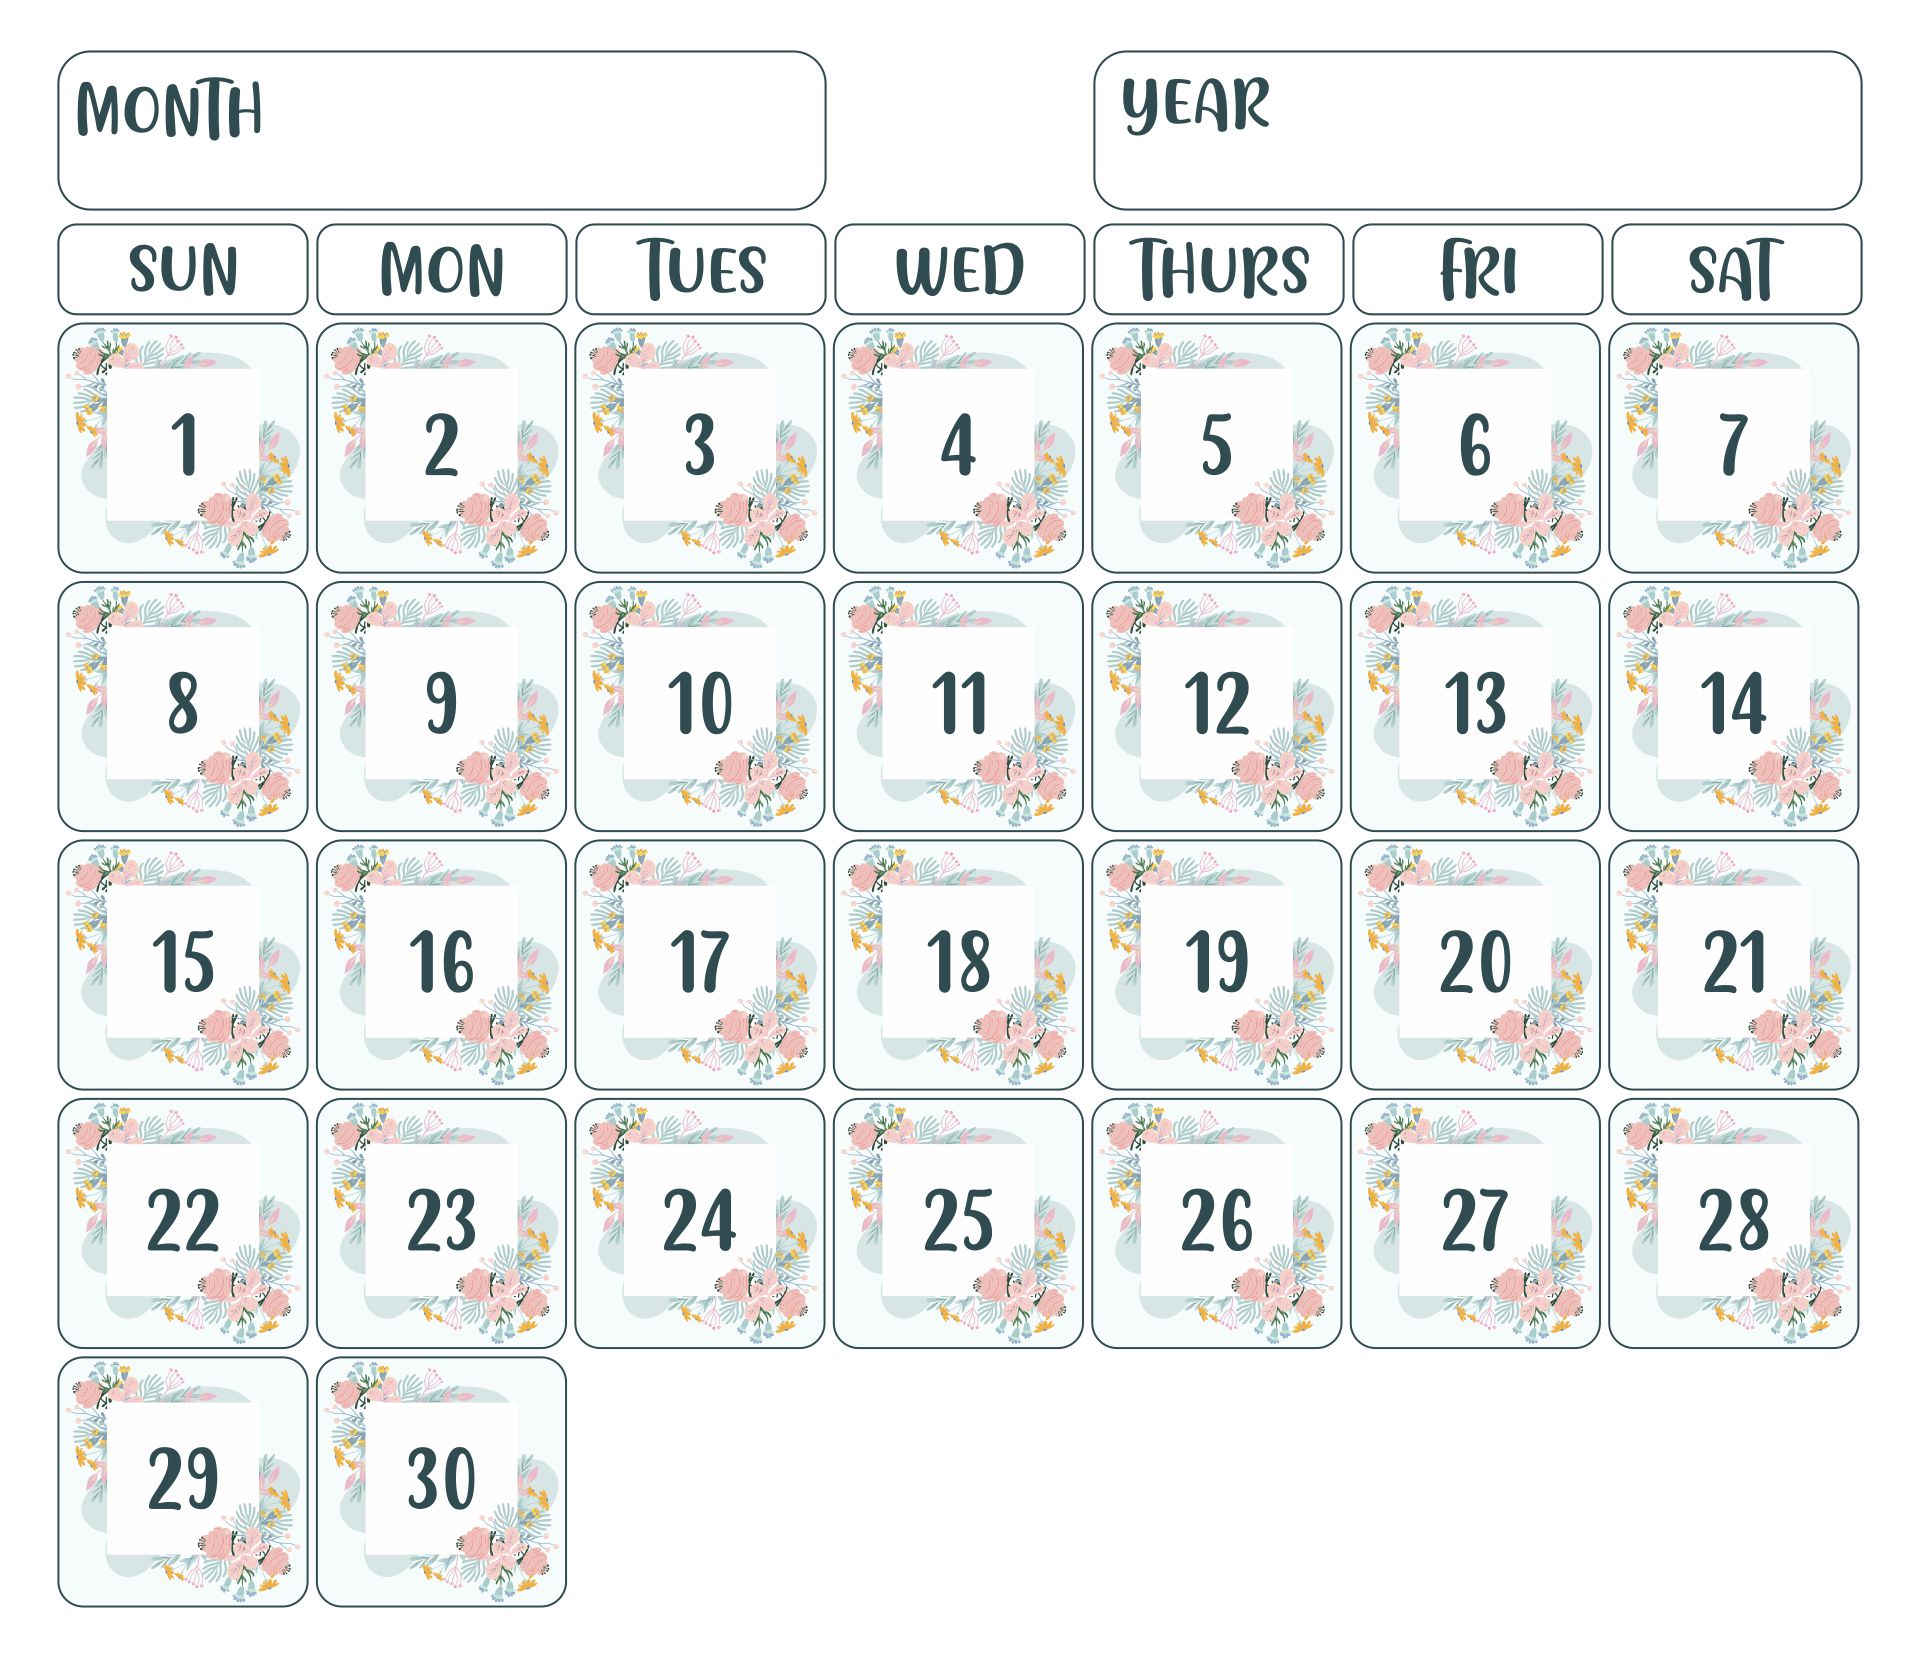 Printable Spring Calendar Numbers